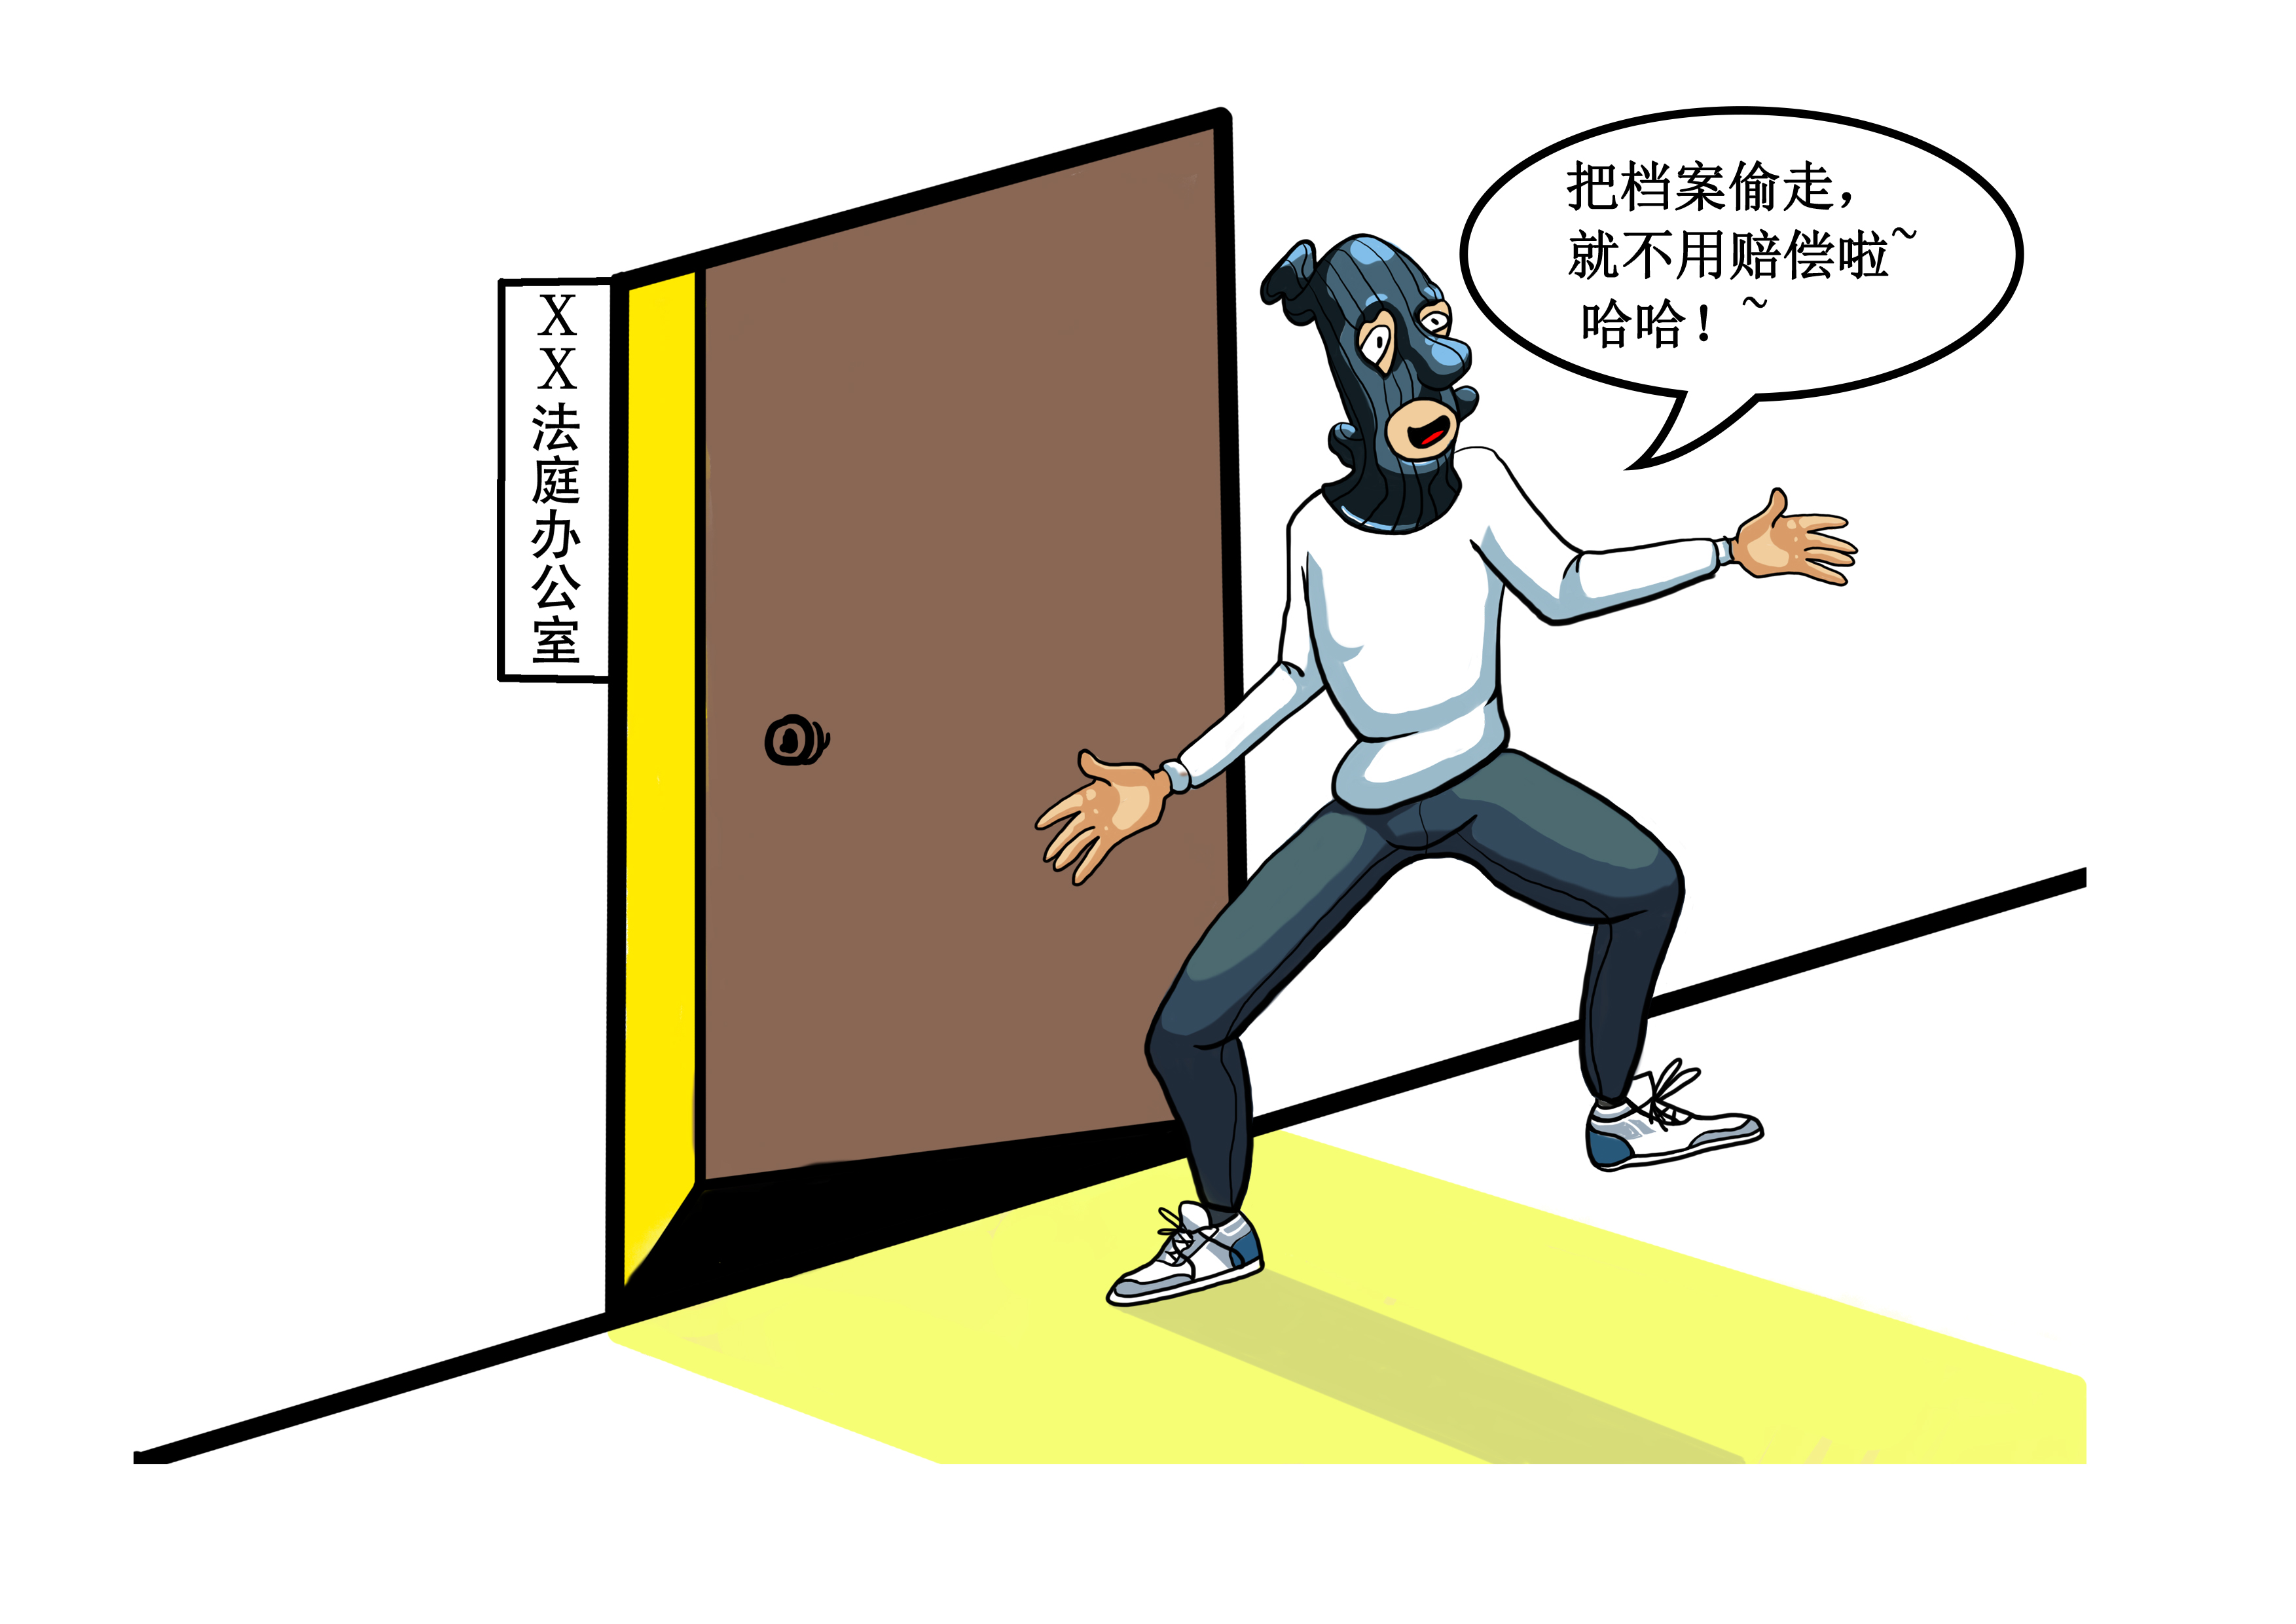 防入室盗窃宣传知识图片_动漫卡通_插画绘画-图行天下素材网